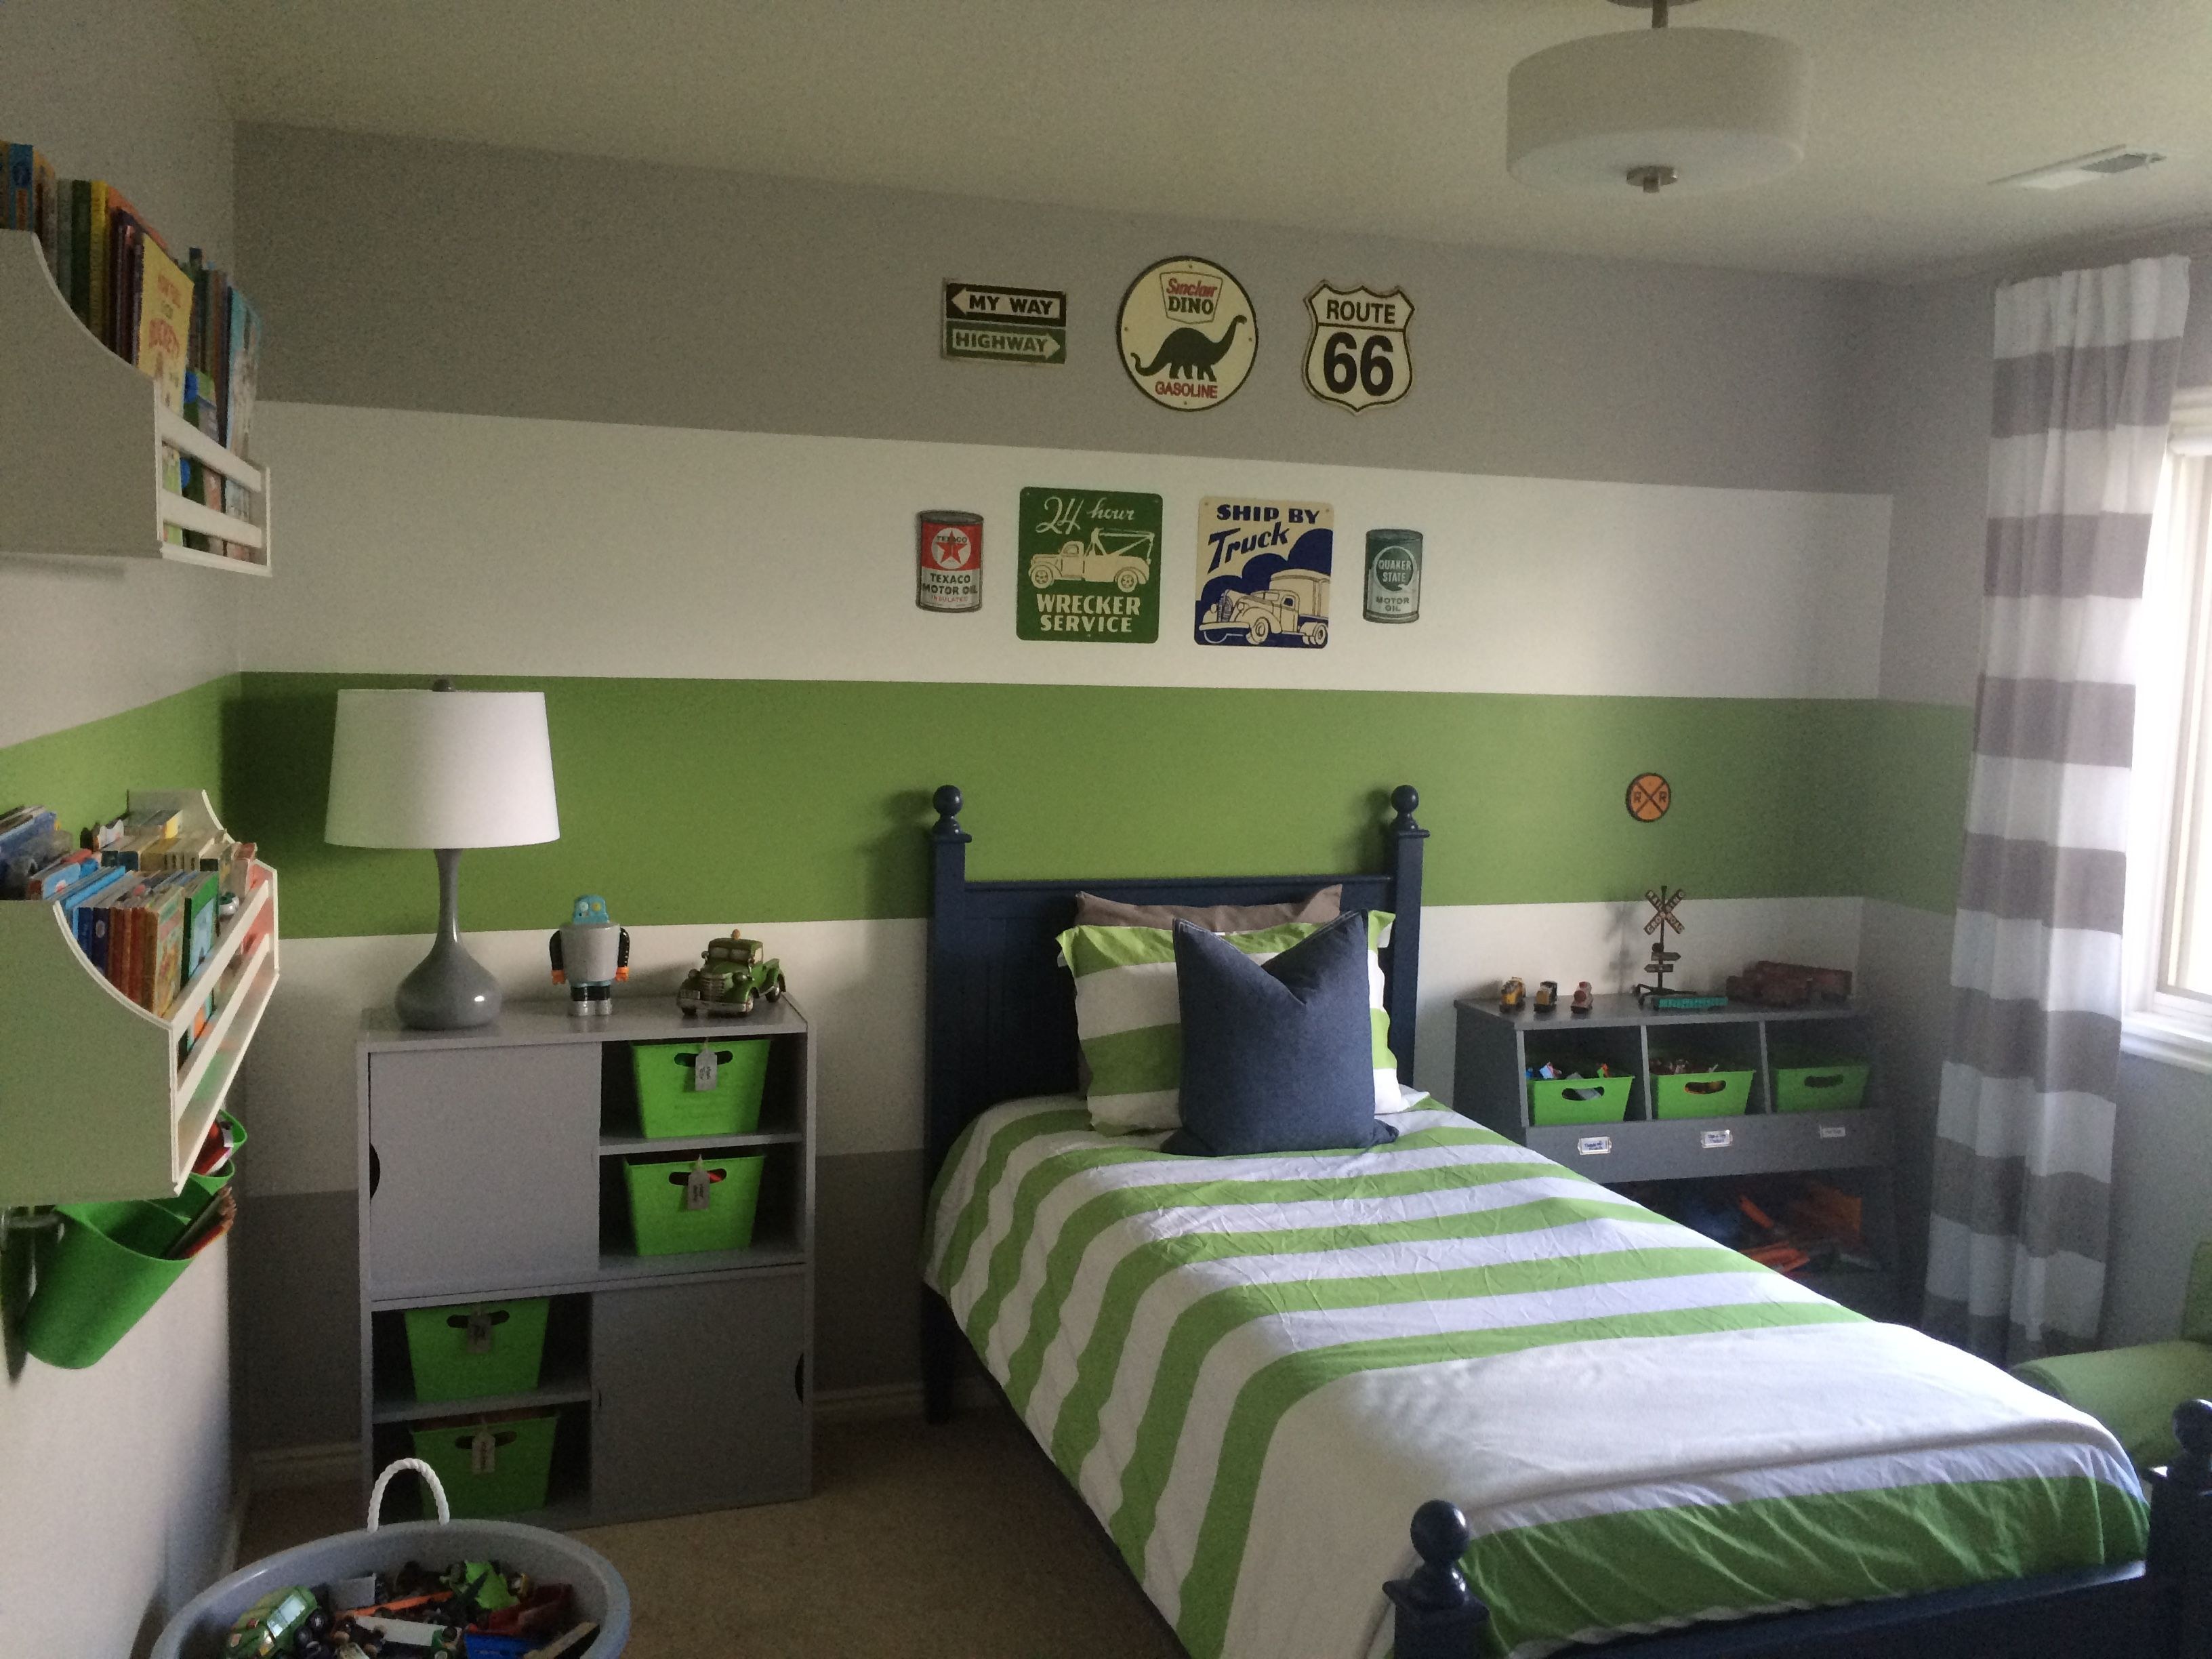 Комната для мальчика в зеленых тонах